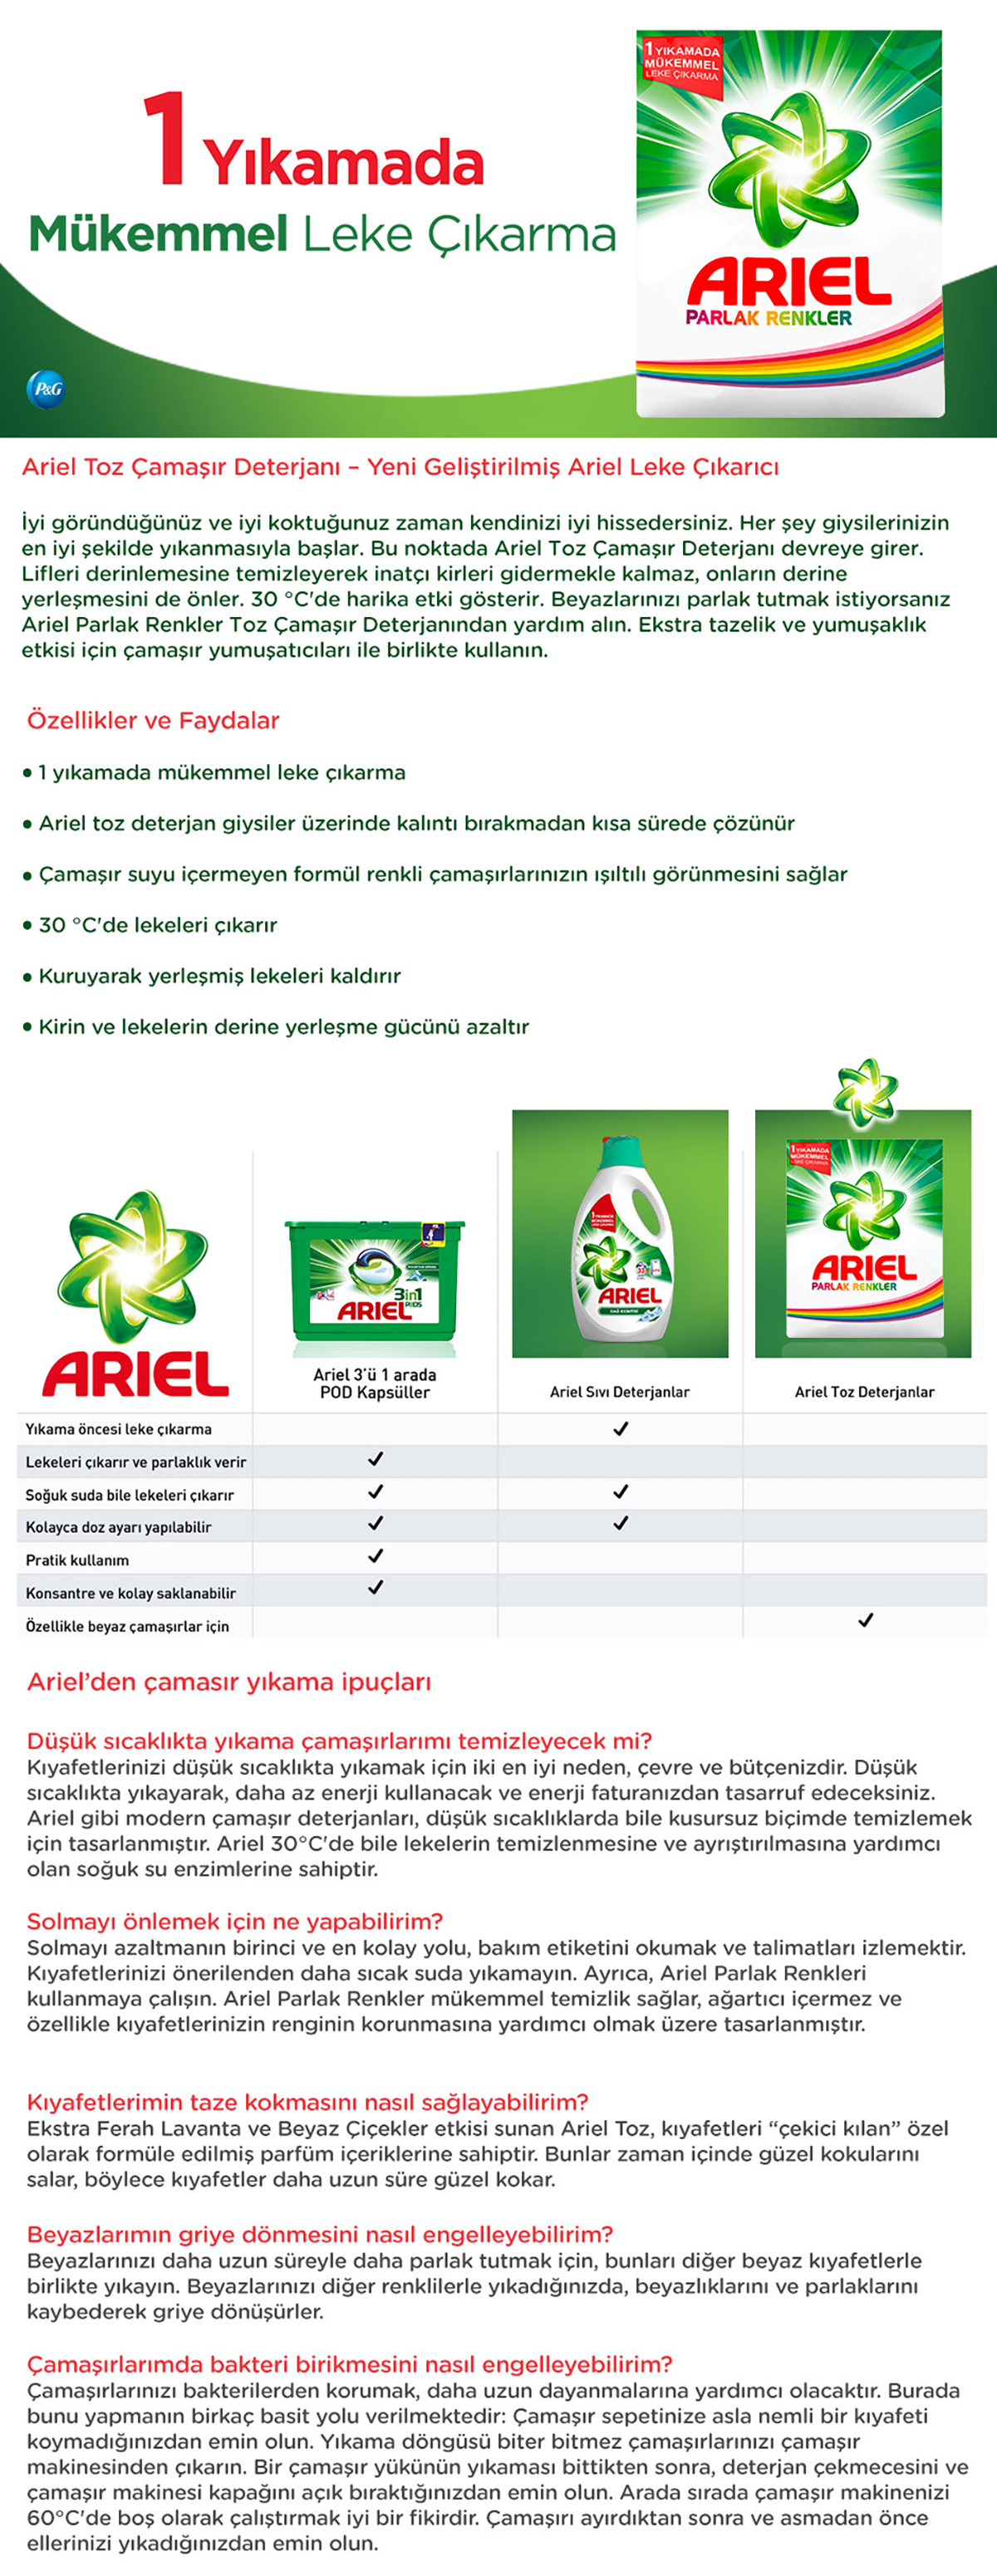 koruma keskin tanıtım  Ariel Toz Çamaşır Deterjanı Parlak Renkler 4.5 kg + Fairy Fiyatı